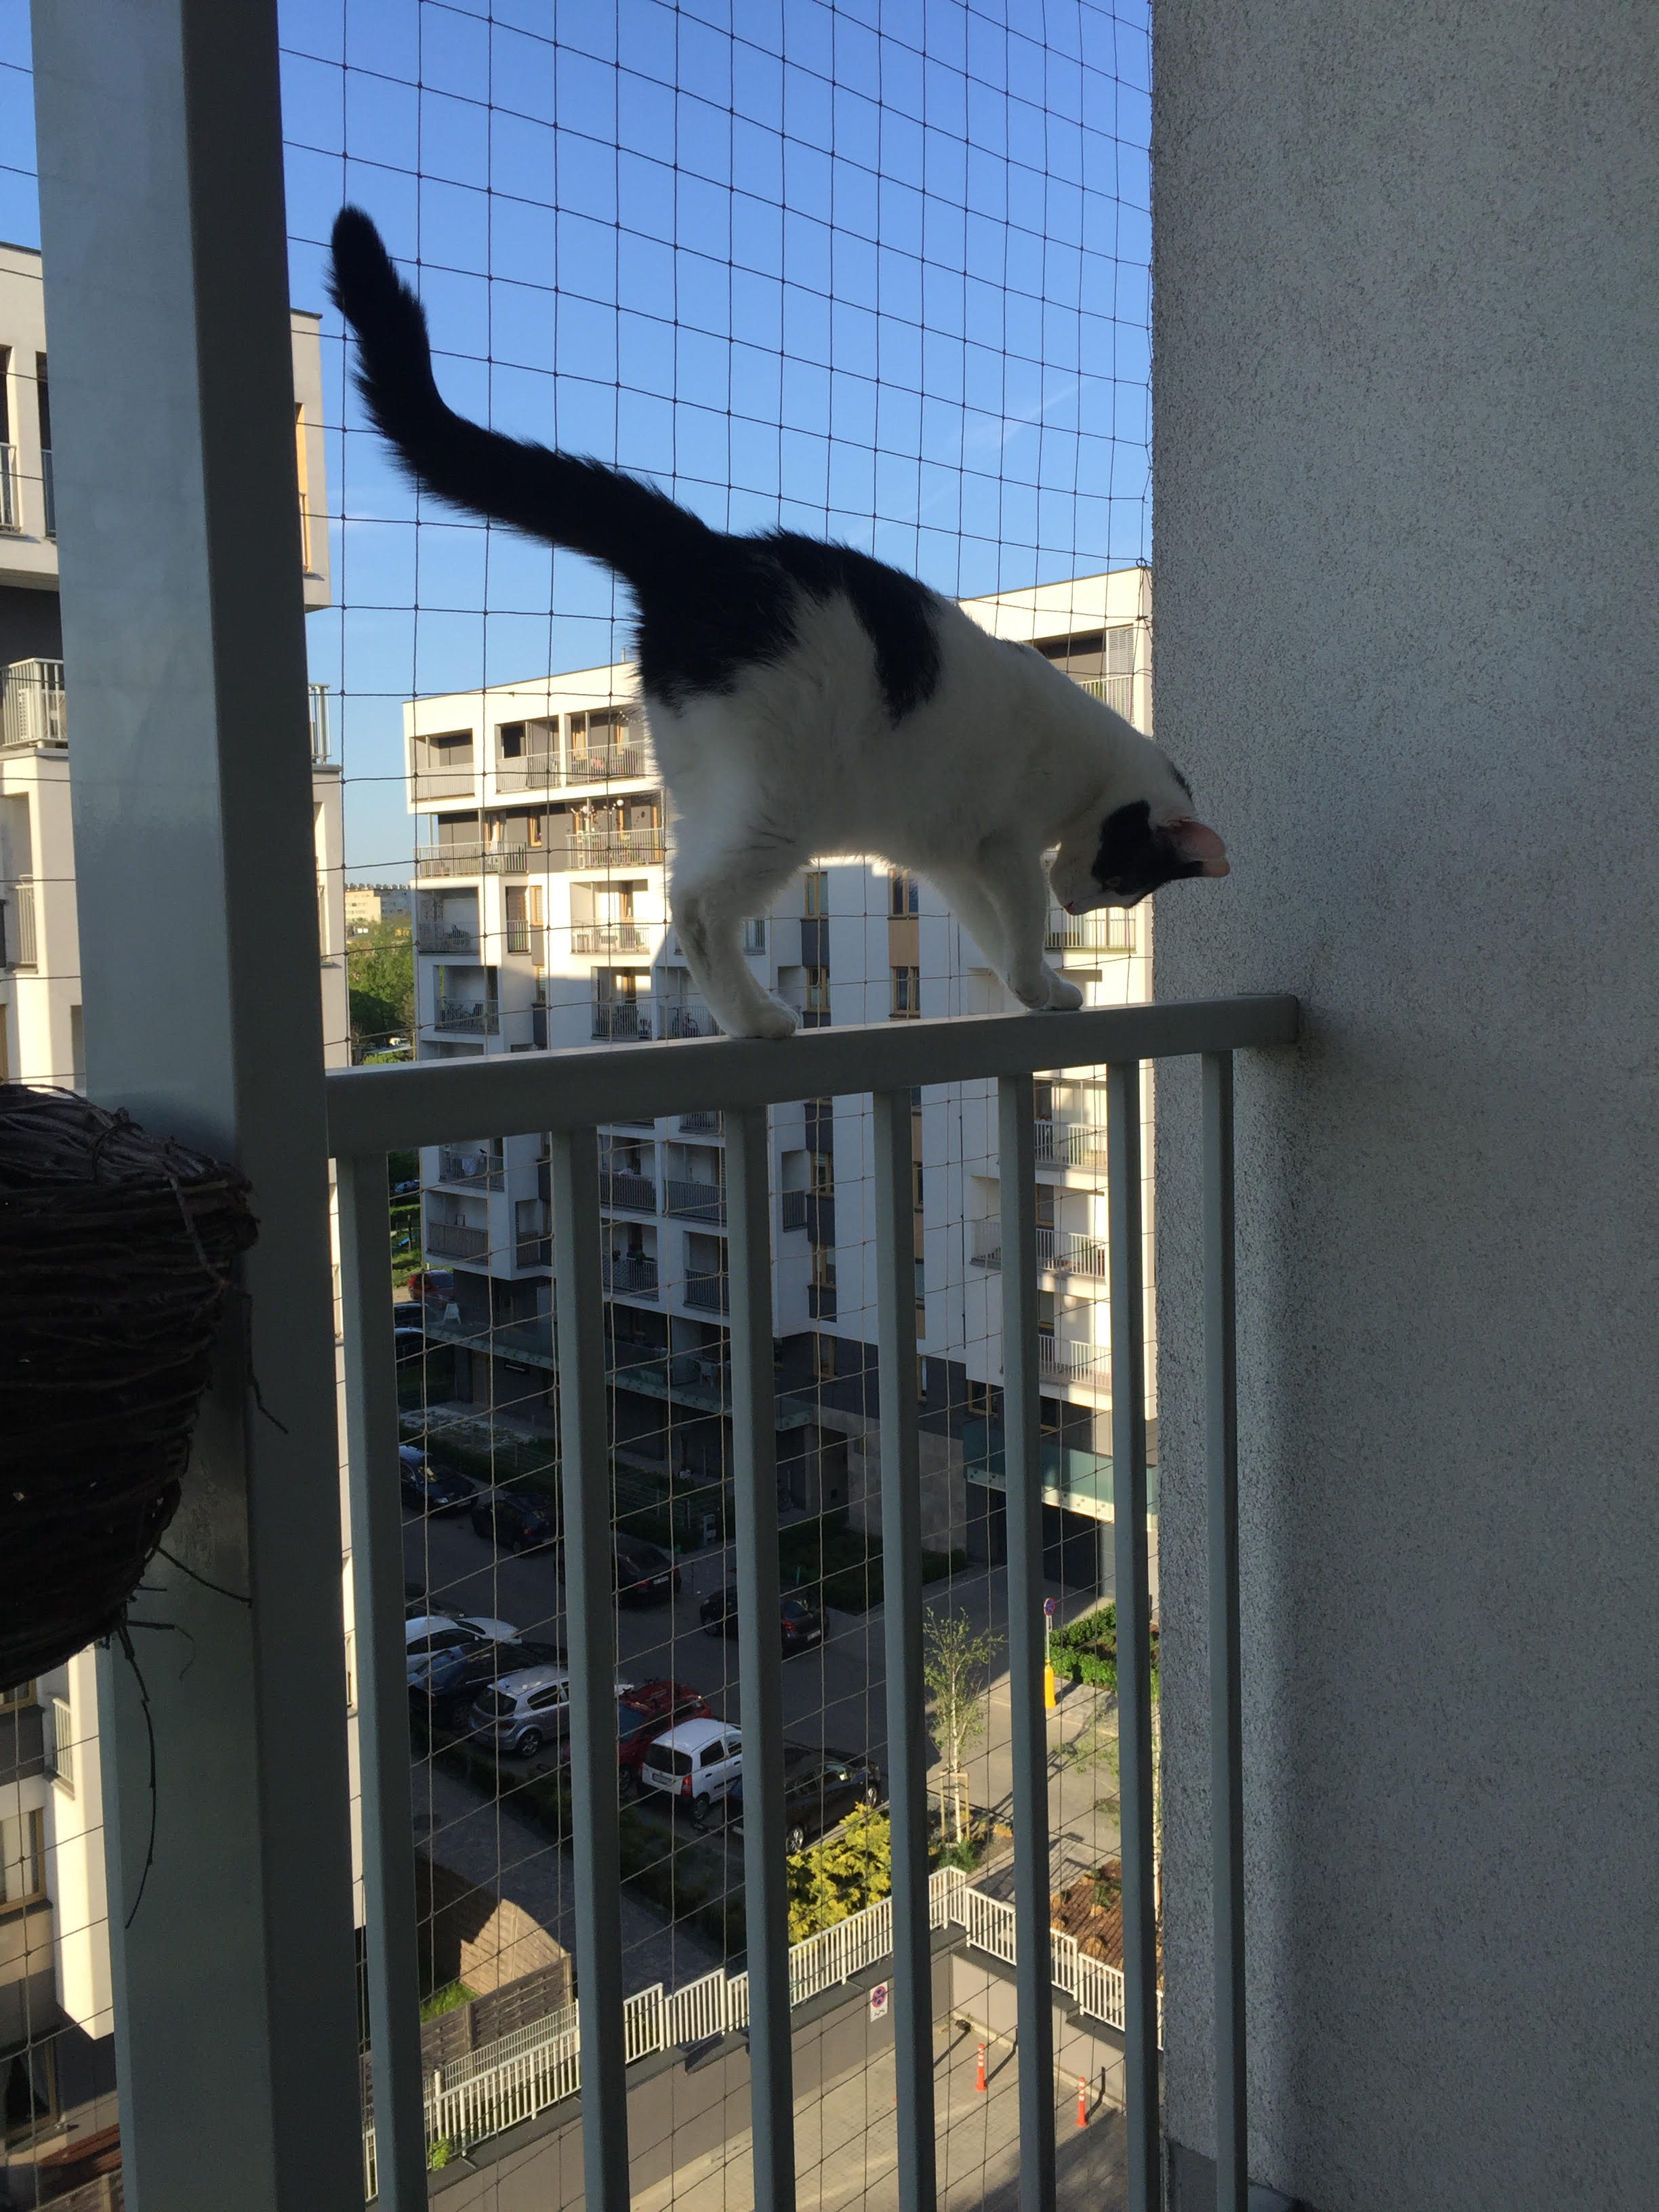 Zestaw 8x2m bez wiercenia z siatka na balkon dla kota. Kocia siatka balkonowa oczko 50x50mm. 